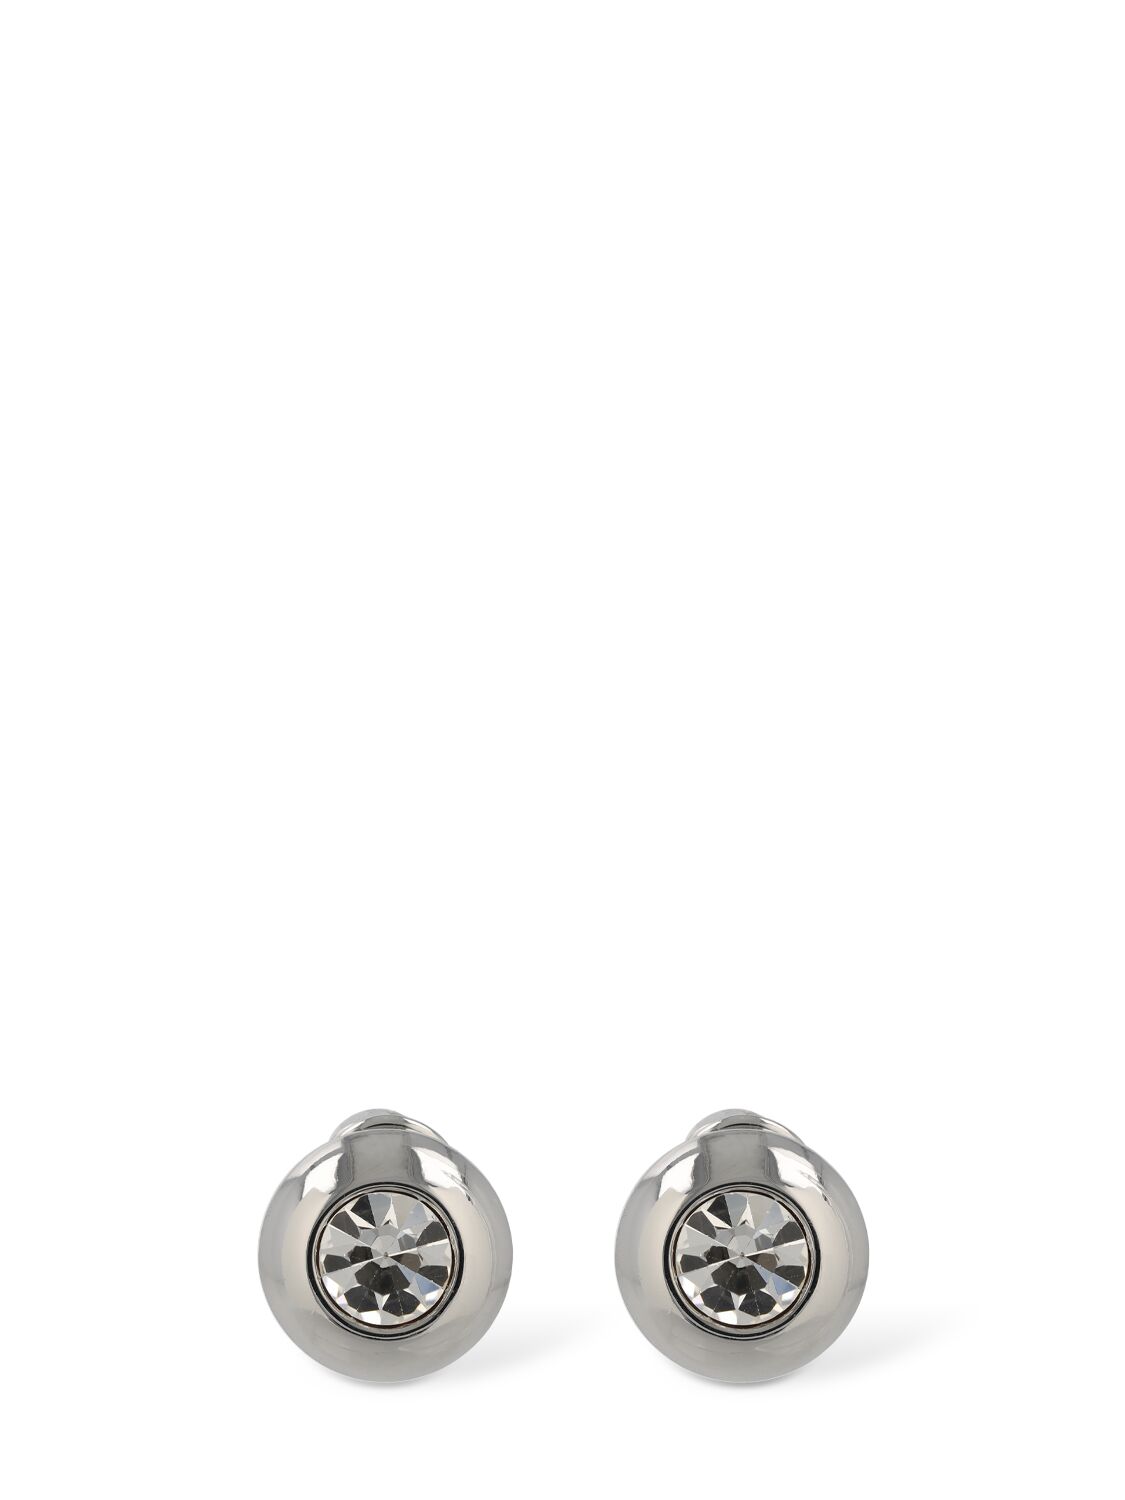 Crystal Dome Stud Earrings